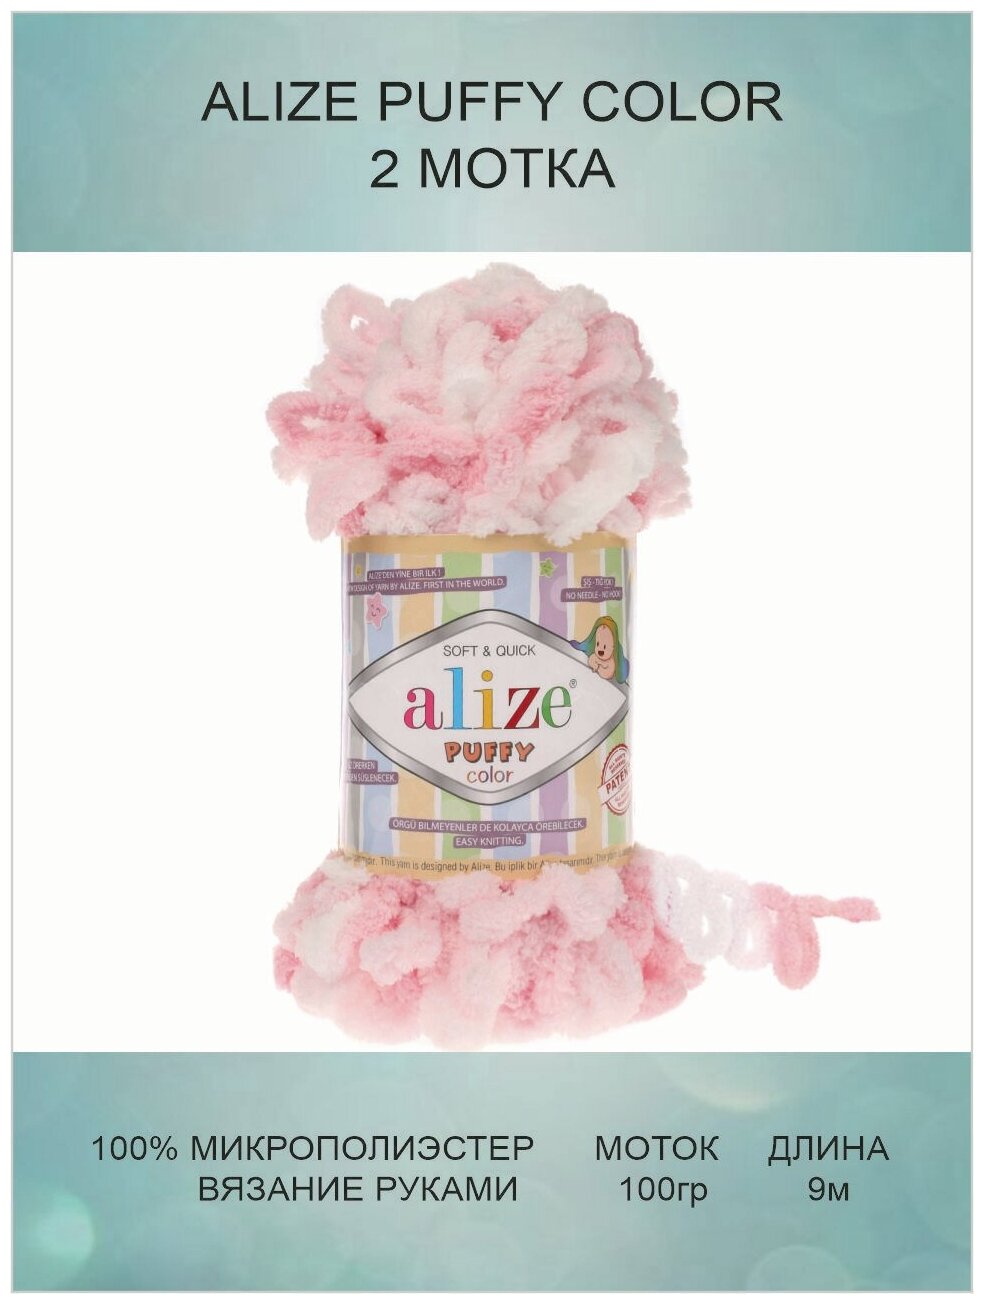 Пряжа для вязания ALIZE Puffy Color Ализе Пуффи Колор: 5863 (бело-розовый) / 2 шт / 9 м / 100 г / 100% микрополиэстер